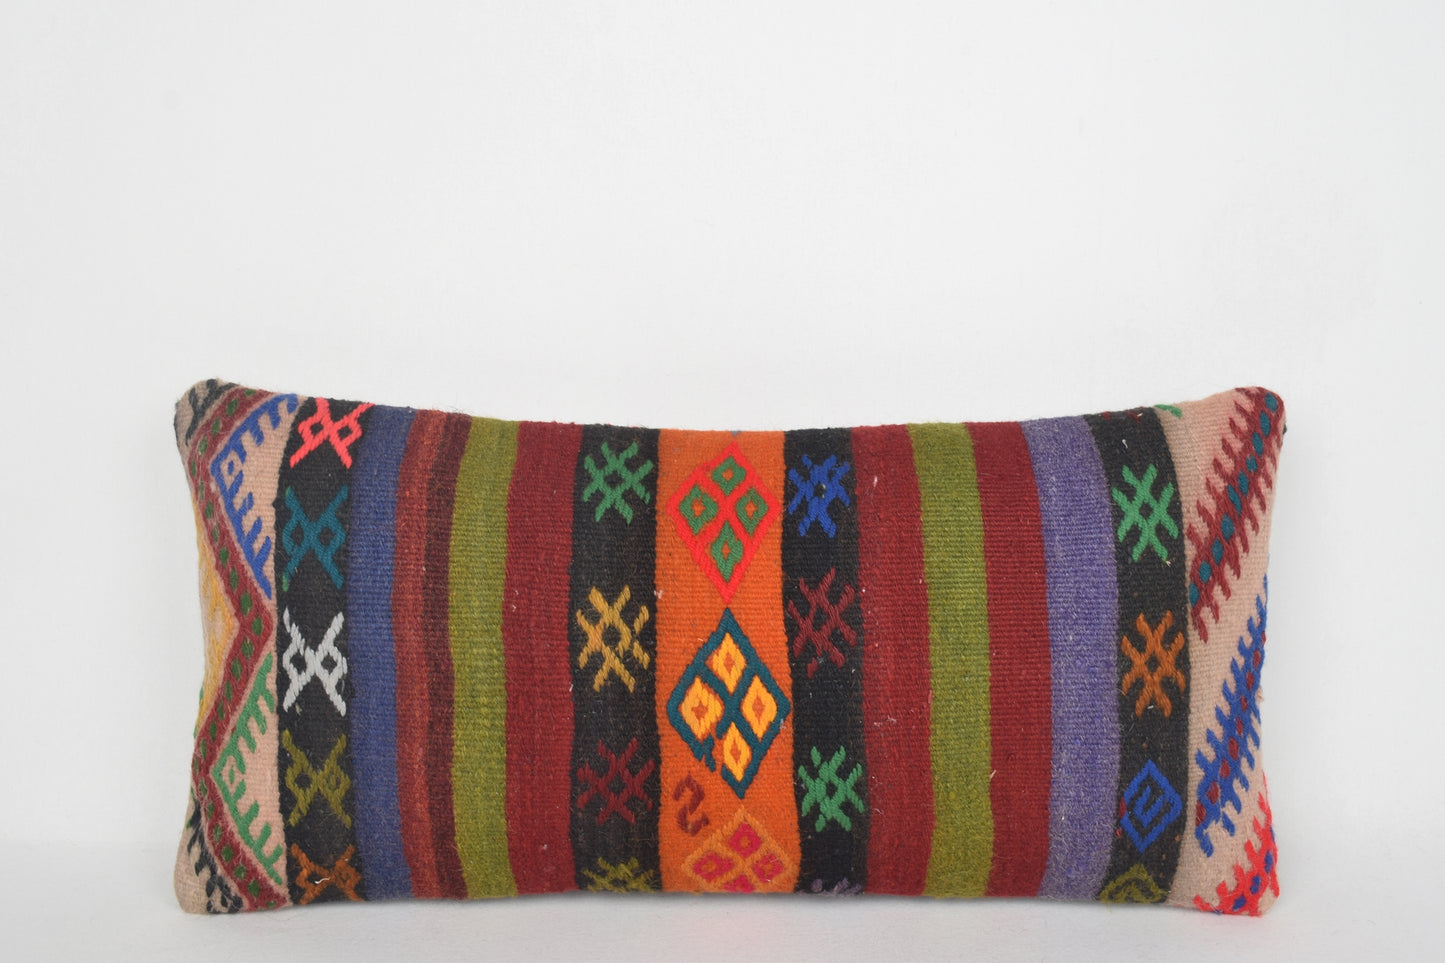 Canyon Kilim Woven Rug Pillow Lumbar, Boho Accent Pillow F00166 12x24 " - 30x60 cm.